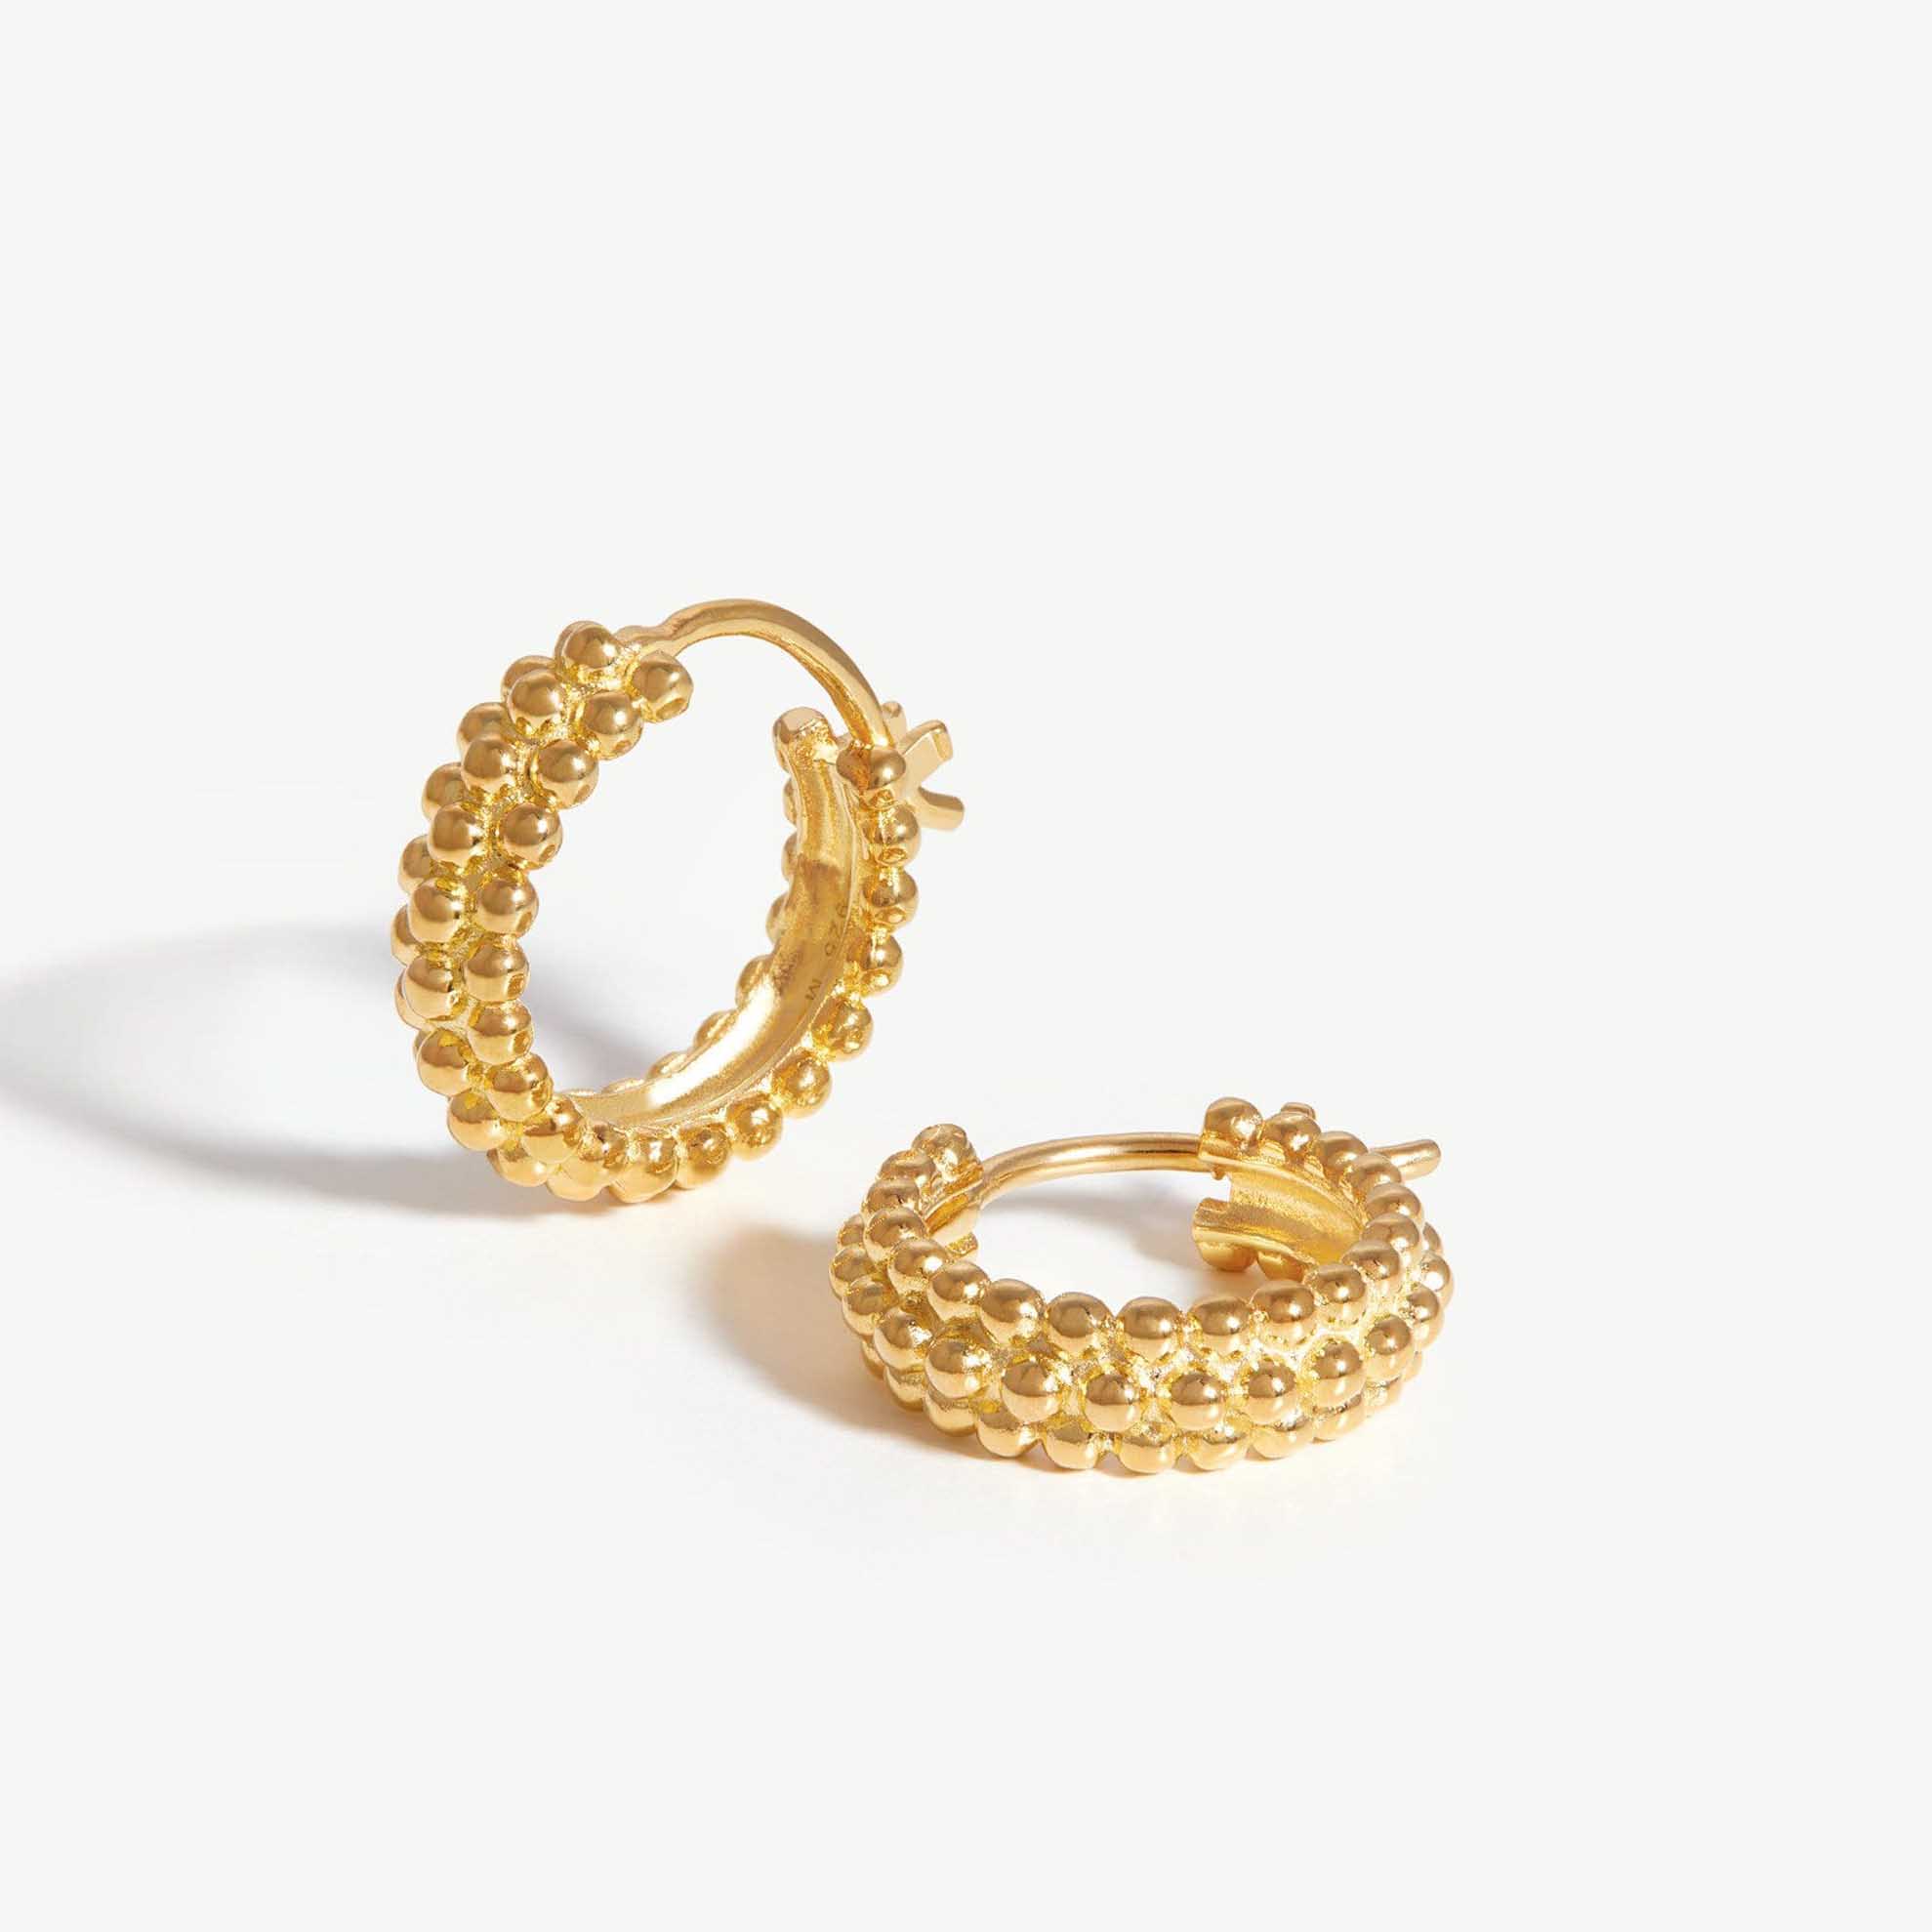 membuat perhiasan anting-anting berisi emas 18 karat buatan tangan khusus